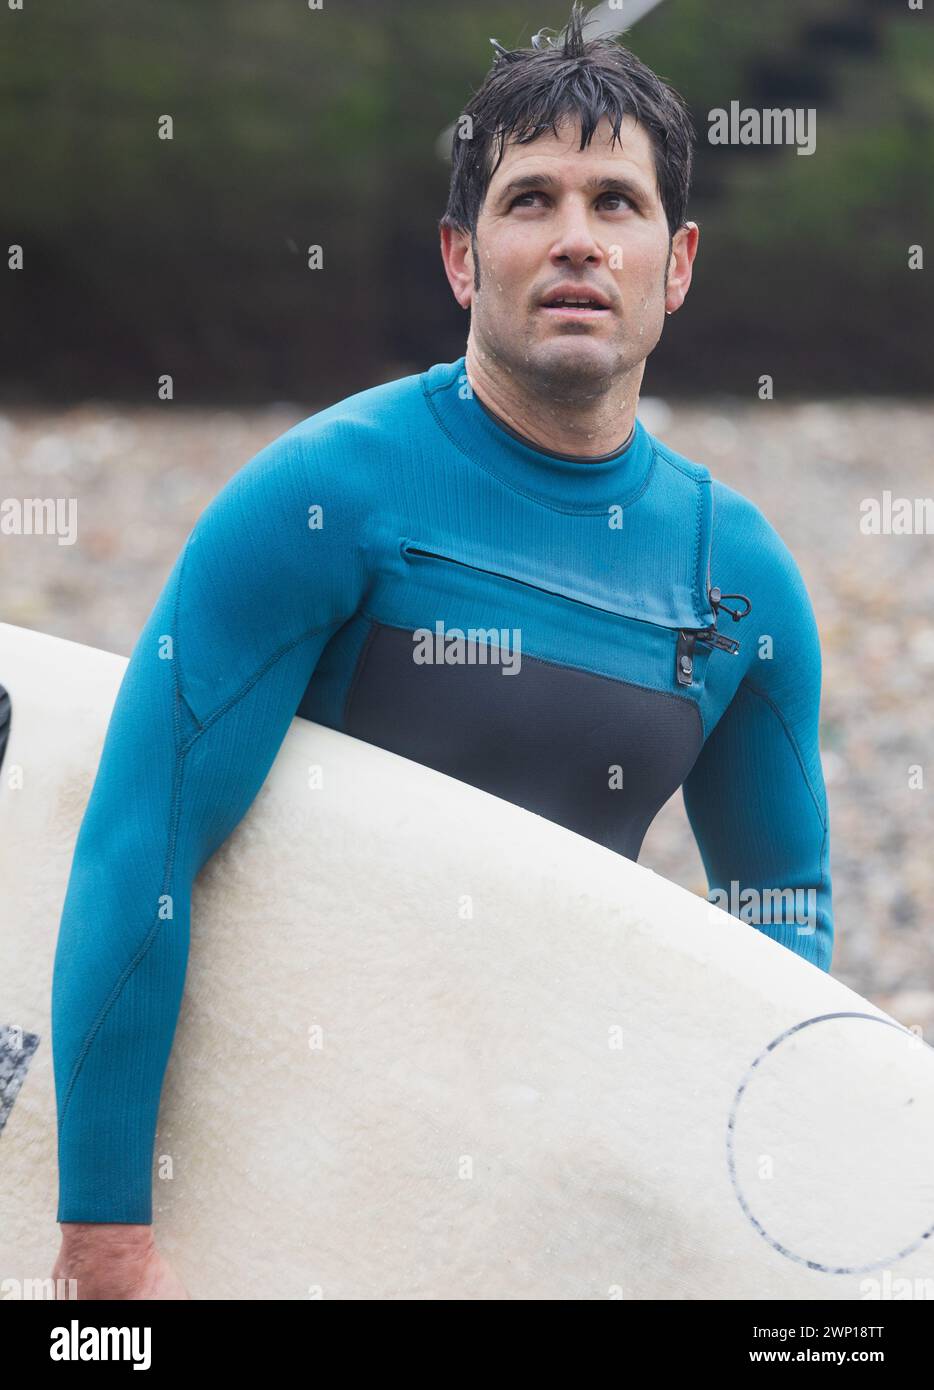 Ein Surfer blickt nachdenklich in die Ferne, an Bord in der Hand, am Meer, nachdem er auf den Wellen geritten hat. Stockfoto